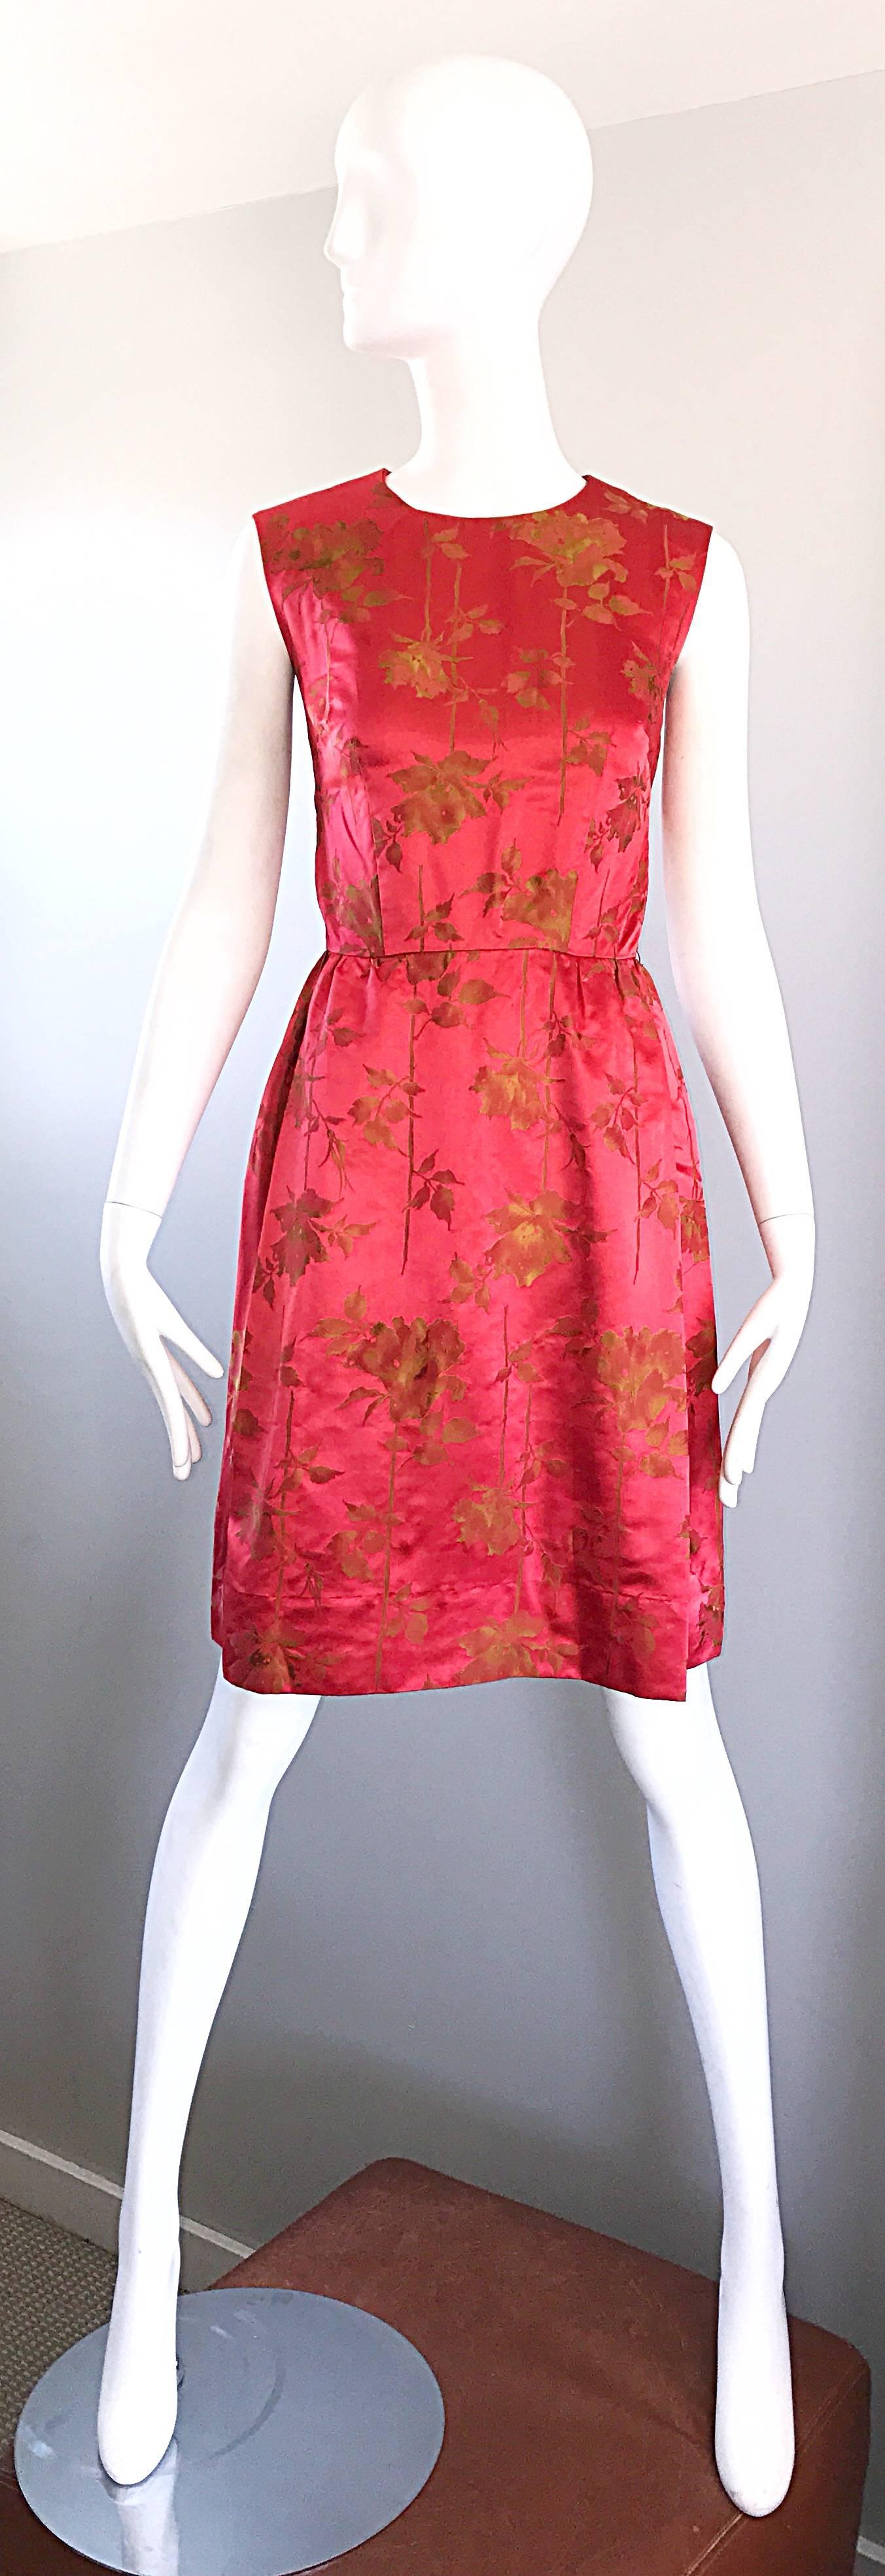 Superbe robe sans manches en satin de soie rouge framboise et or DYNASTY pour I. MAGNIN, milieu/fin des années 1950 ! Ni tout à fait rouge, ni tout à fait rose, ce magnifique bijou est orné de fleurs d'influence asiatique en soie brodée d'or.